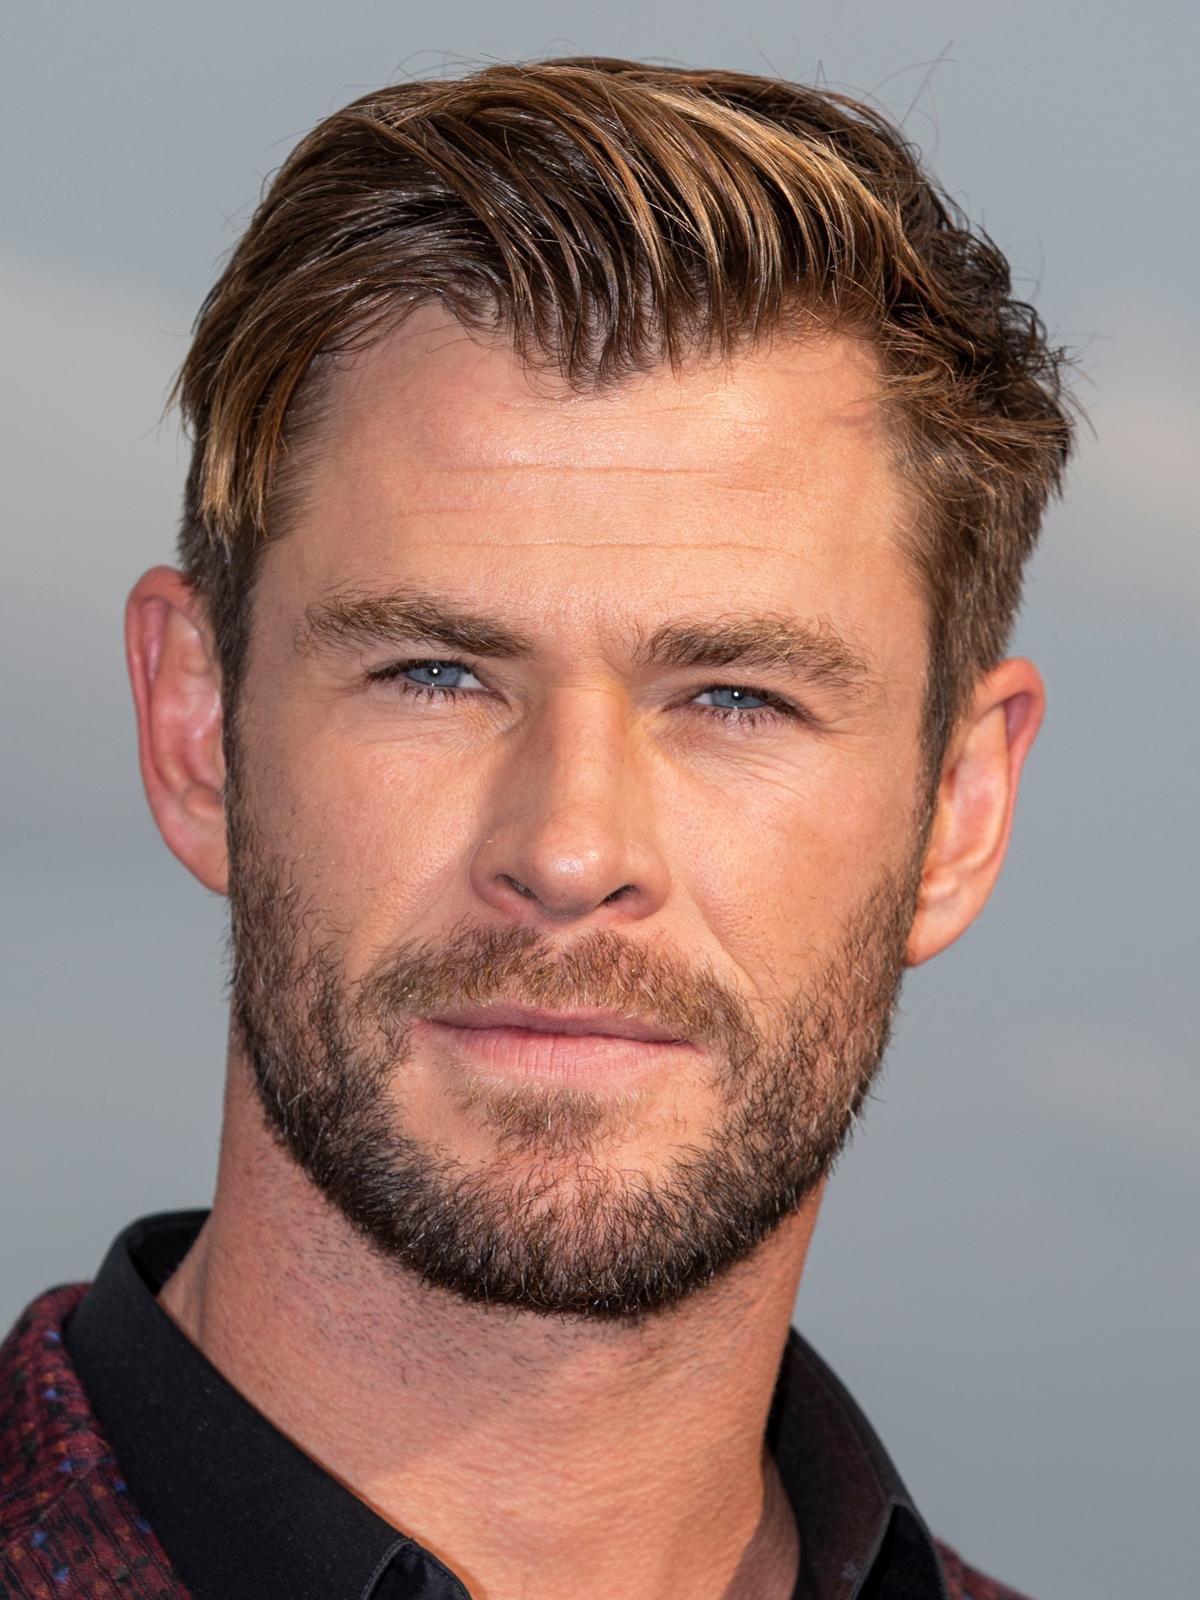 Ator Chris Hemsworth descobre chance de Alzheimer em teste genético